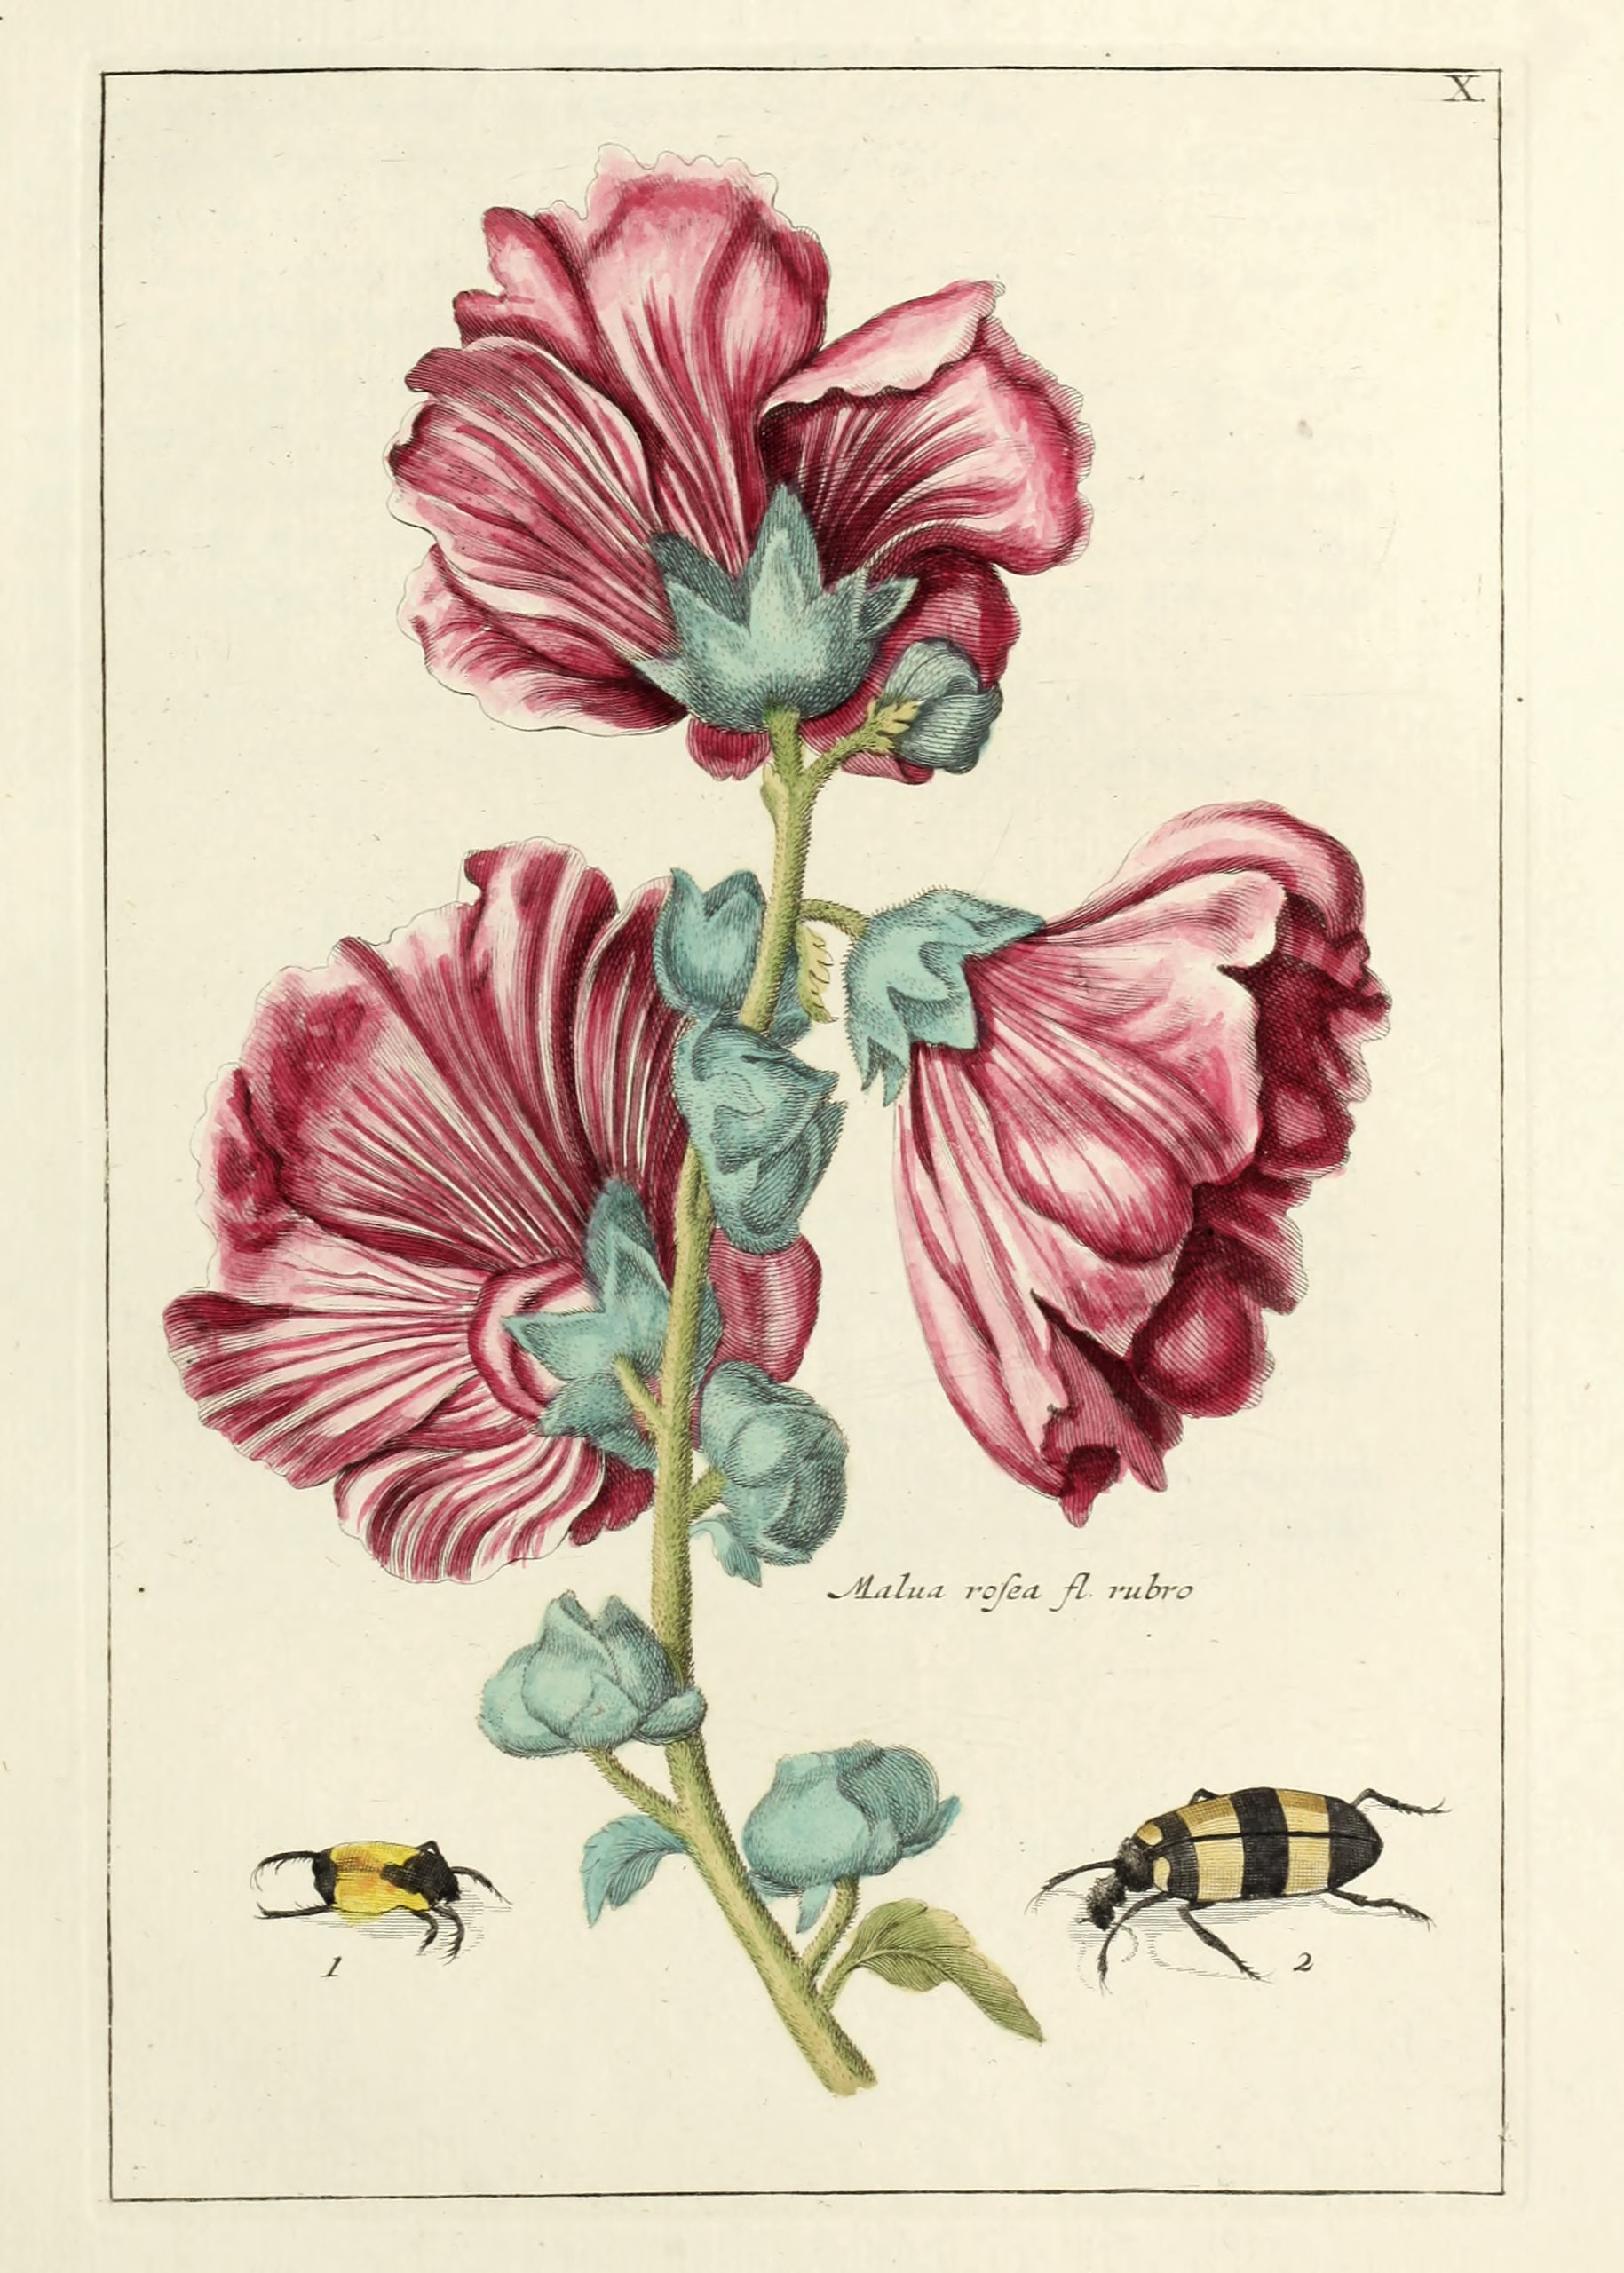 Vintage Botanical Prints - 73 in a series - Vintage Malua Rosea Print from Nederlandsch bloemwerk (1794)